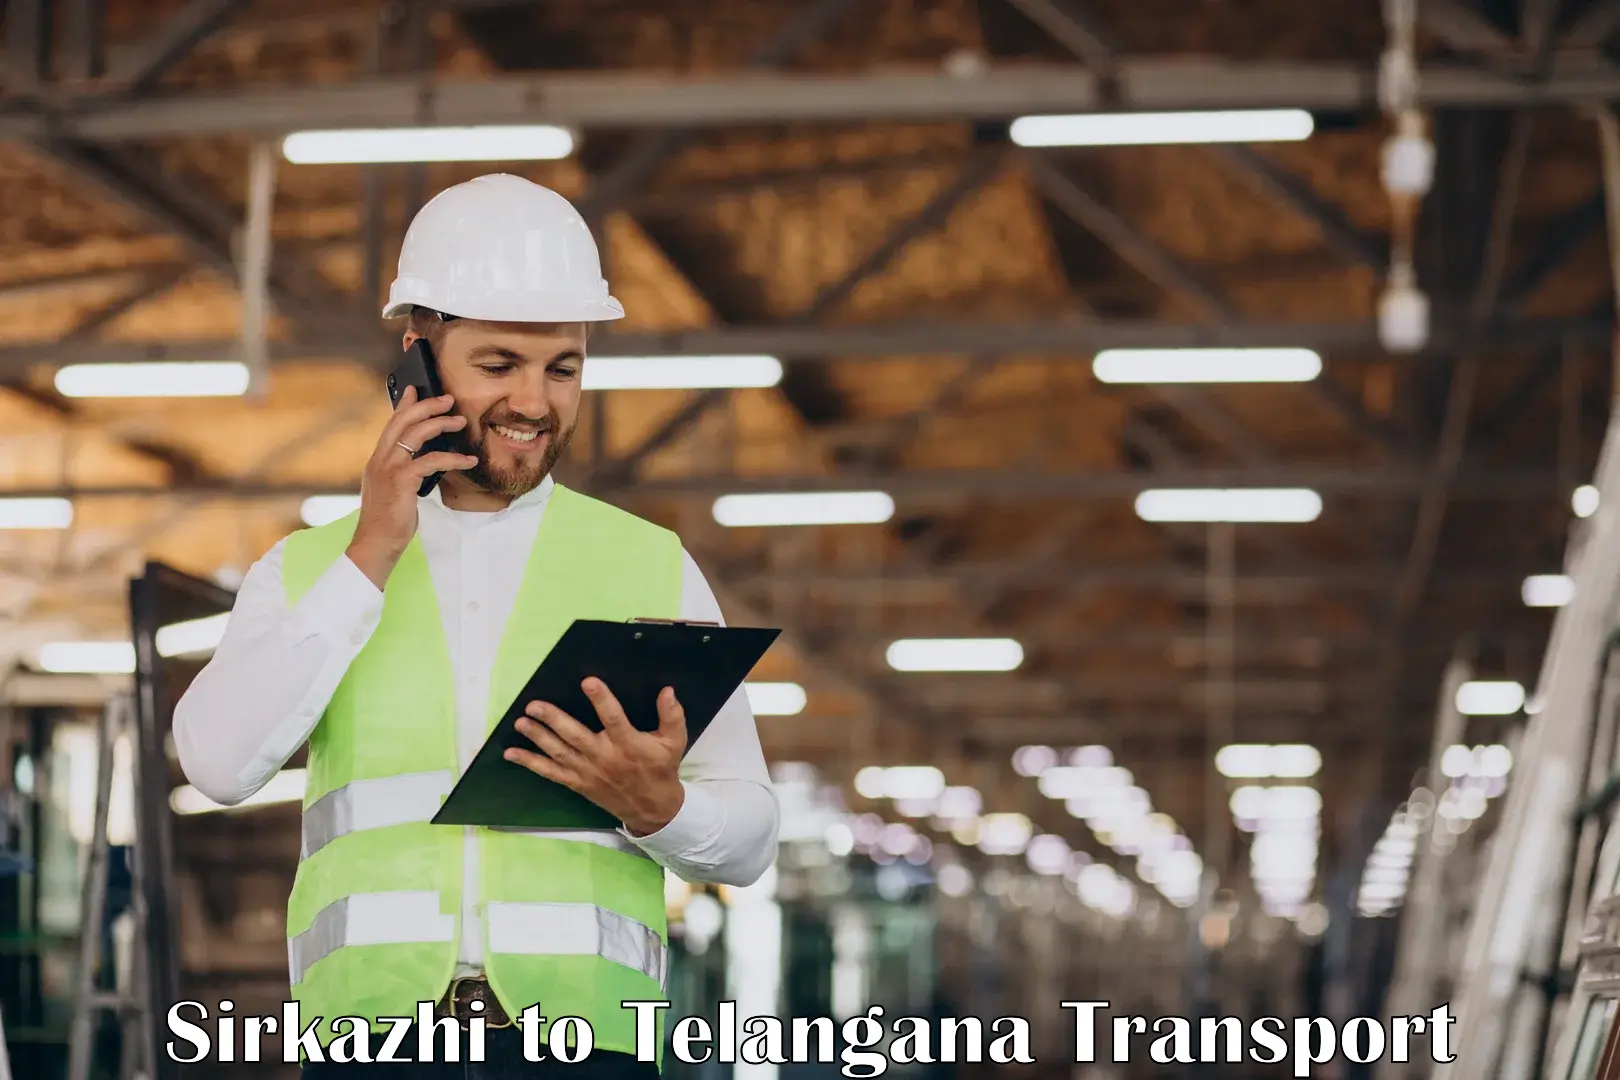 Online transport service Sirkazhi to Eligedu